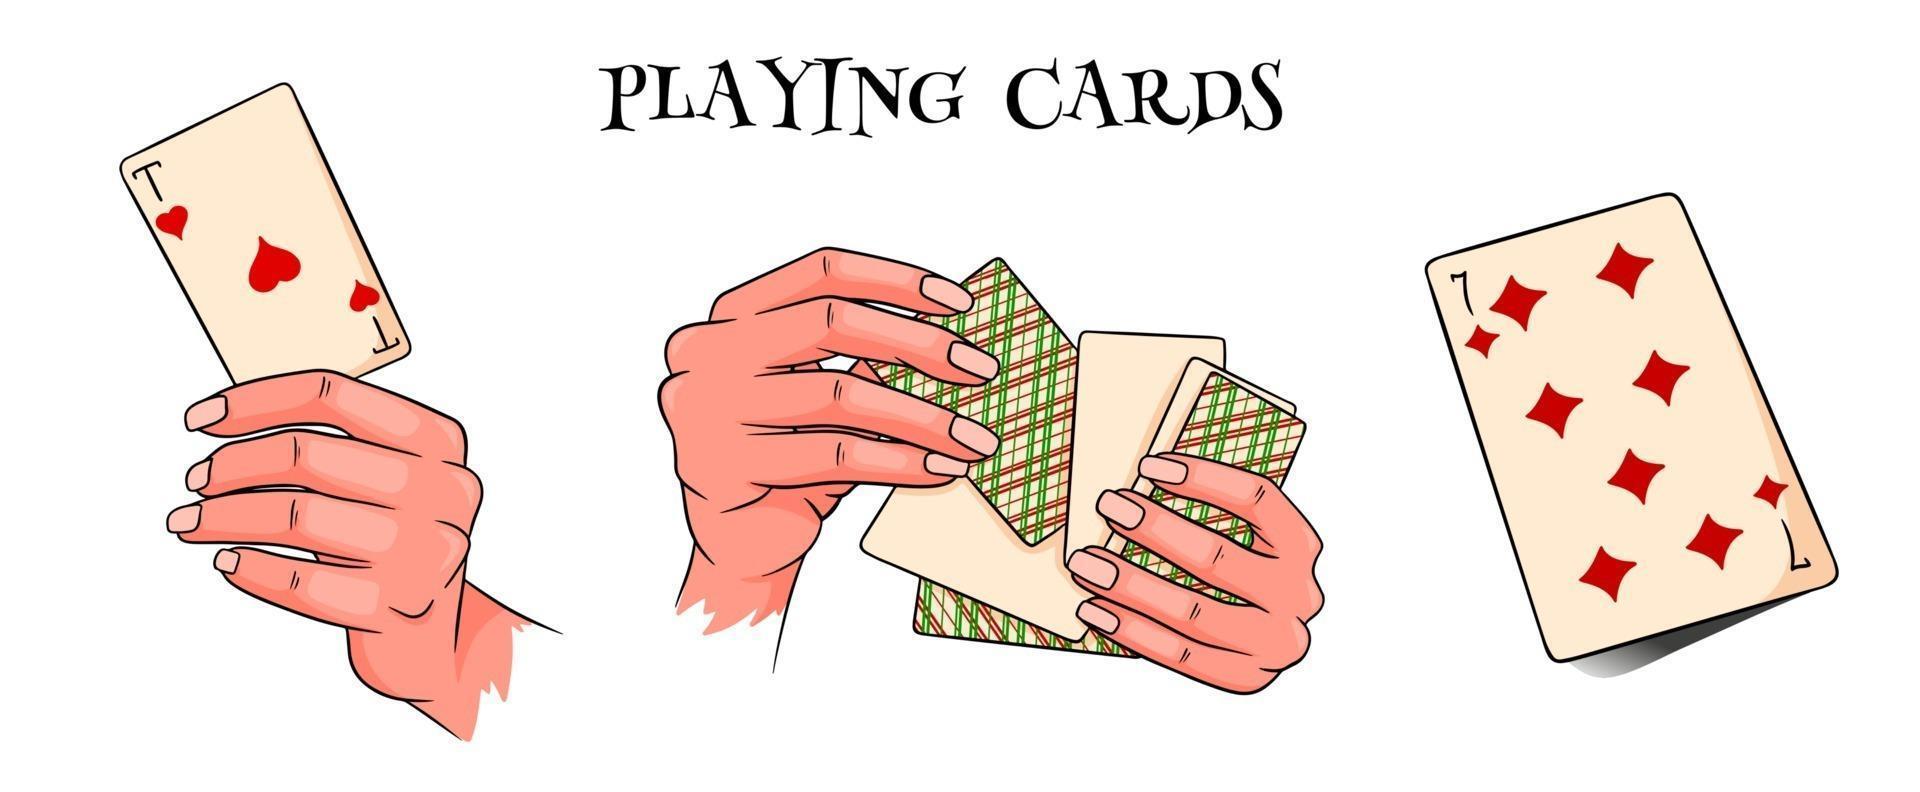 Glücksspiel. Spielkarten in der Hand. Casino, Vermögen, Glück. großer Satz. Cartoon-Stil. vektor